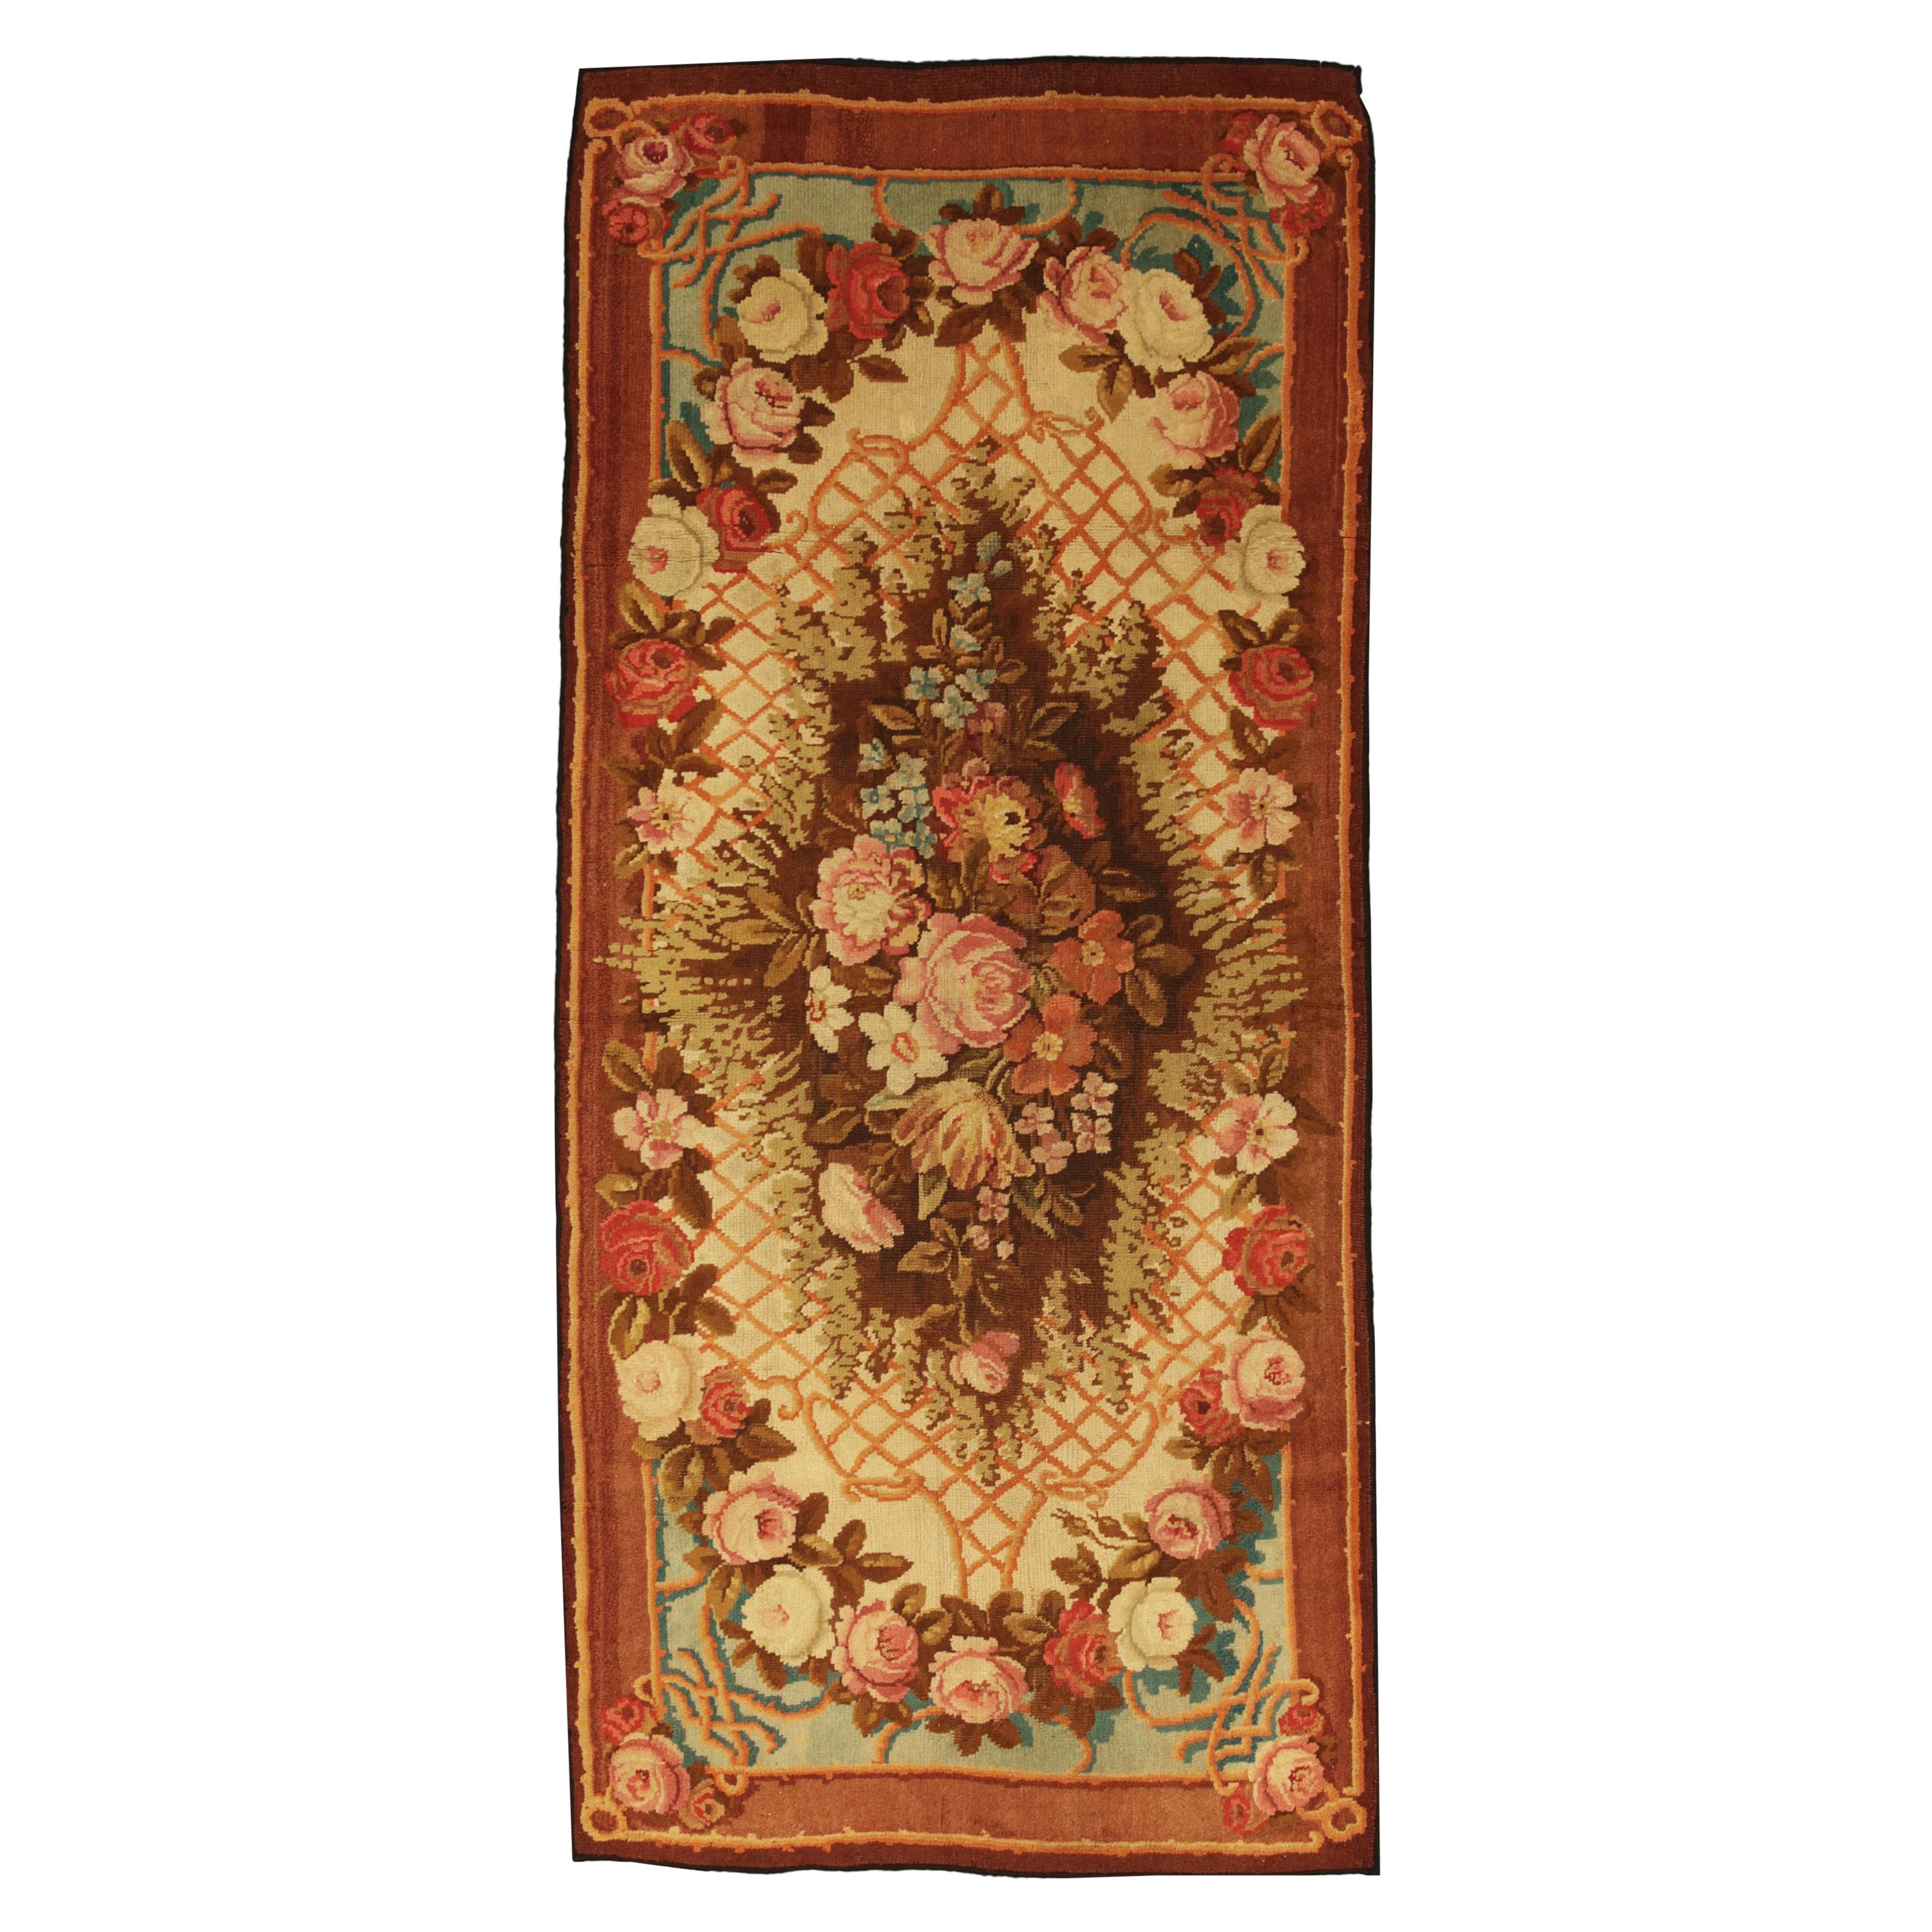 Tapis Axminster à motifs floraux multicolores, vers 1880